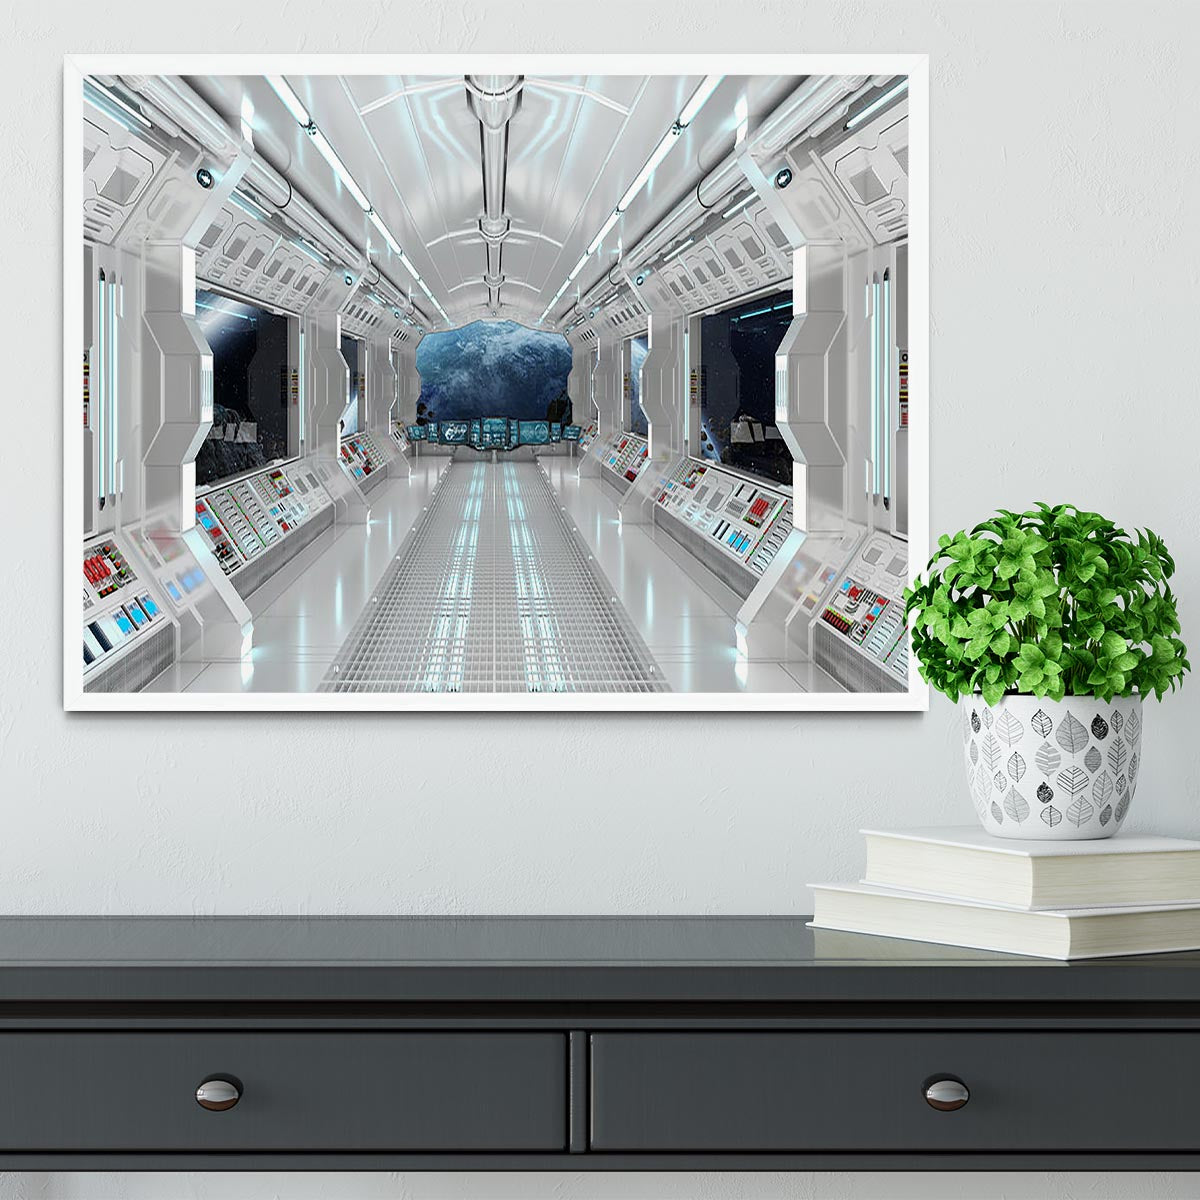 Inside Space Shuttle Framed Print - Canvas Art Rocks -6